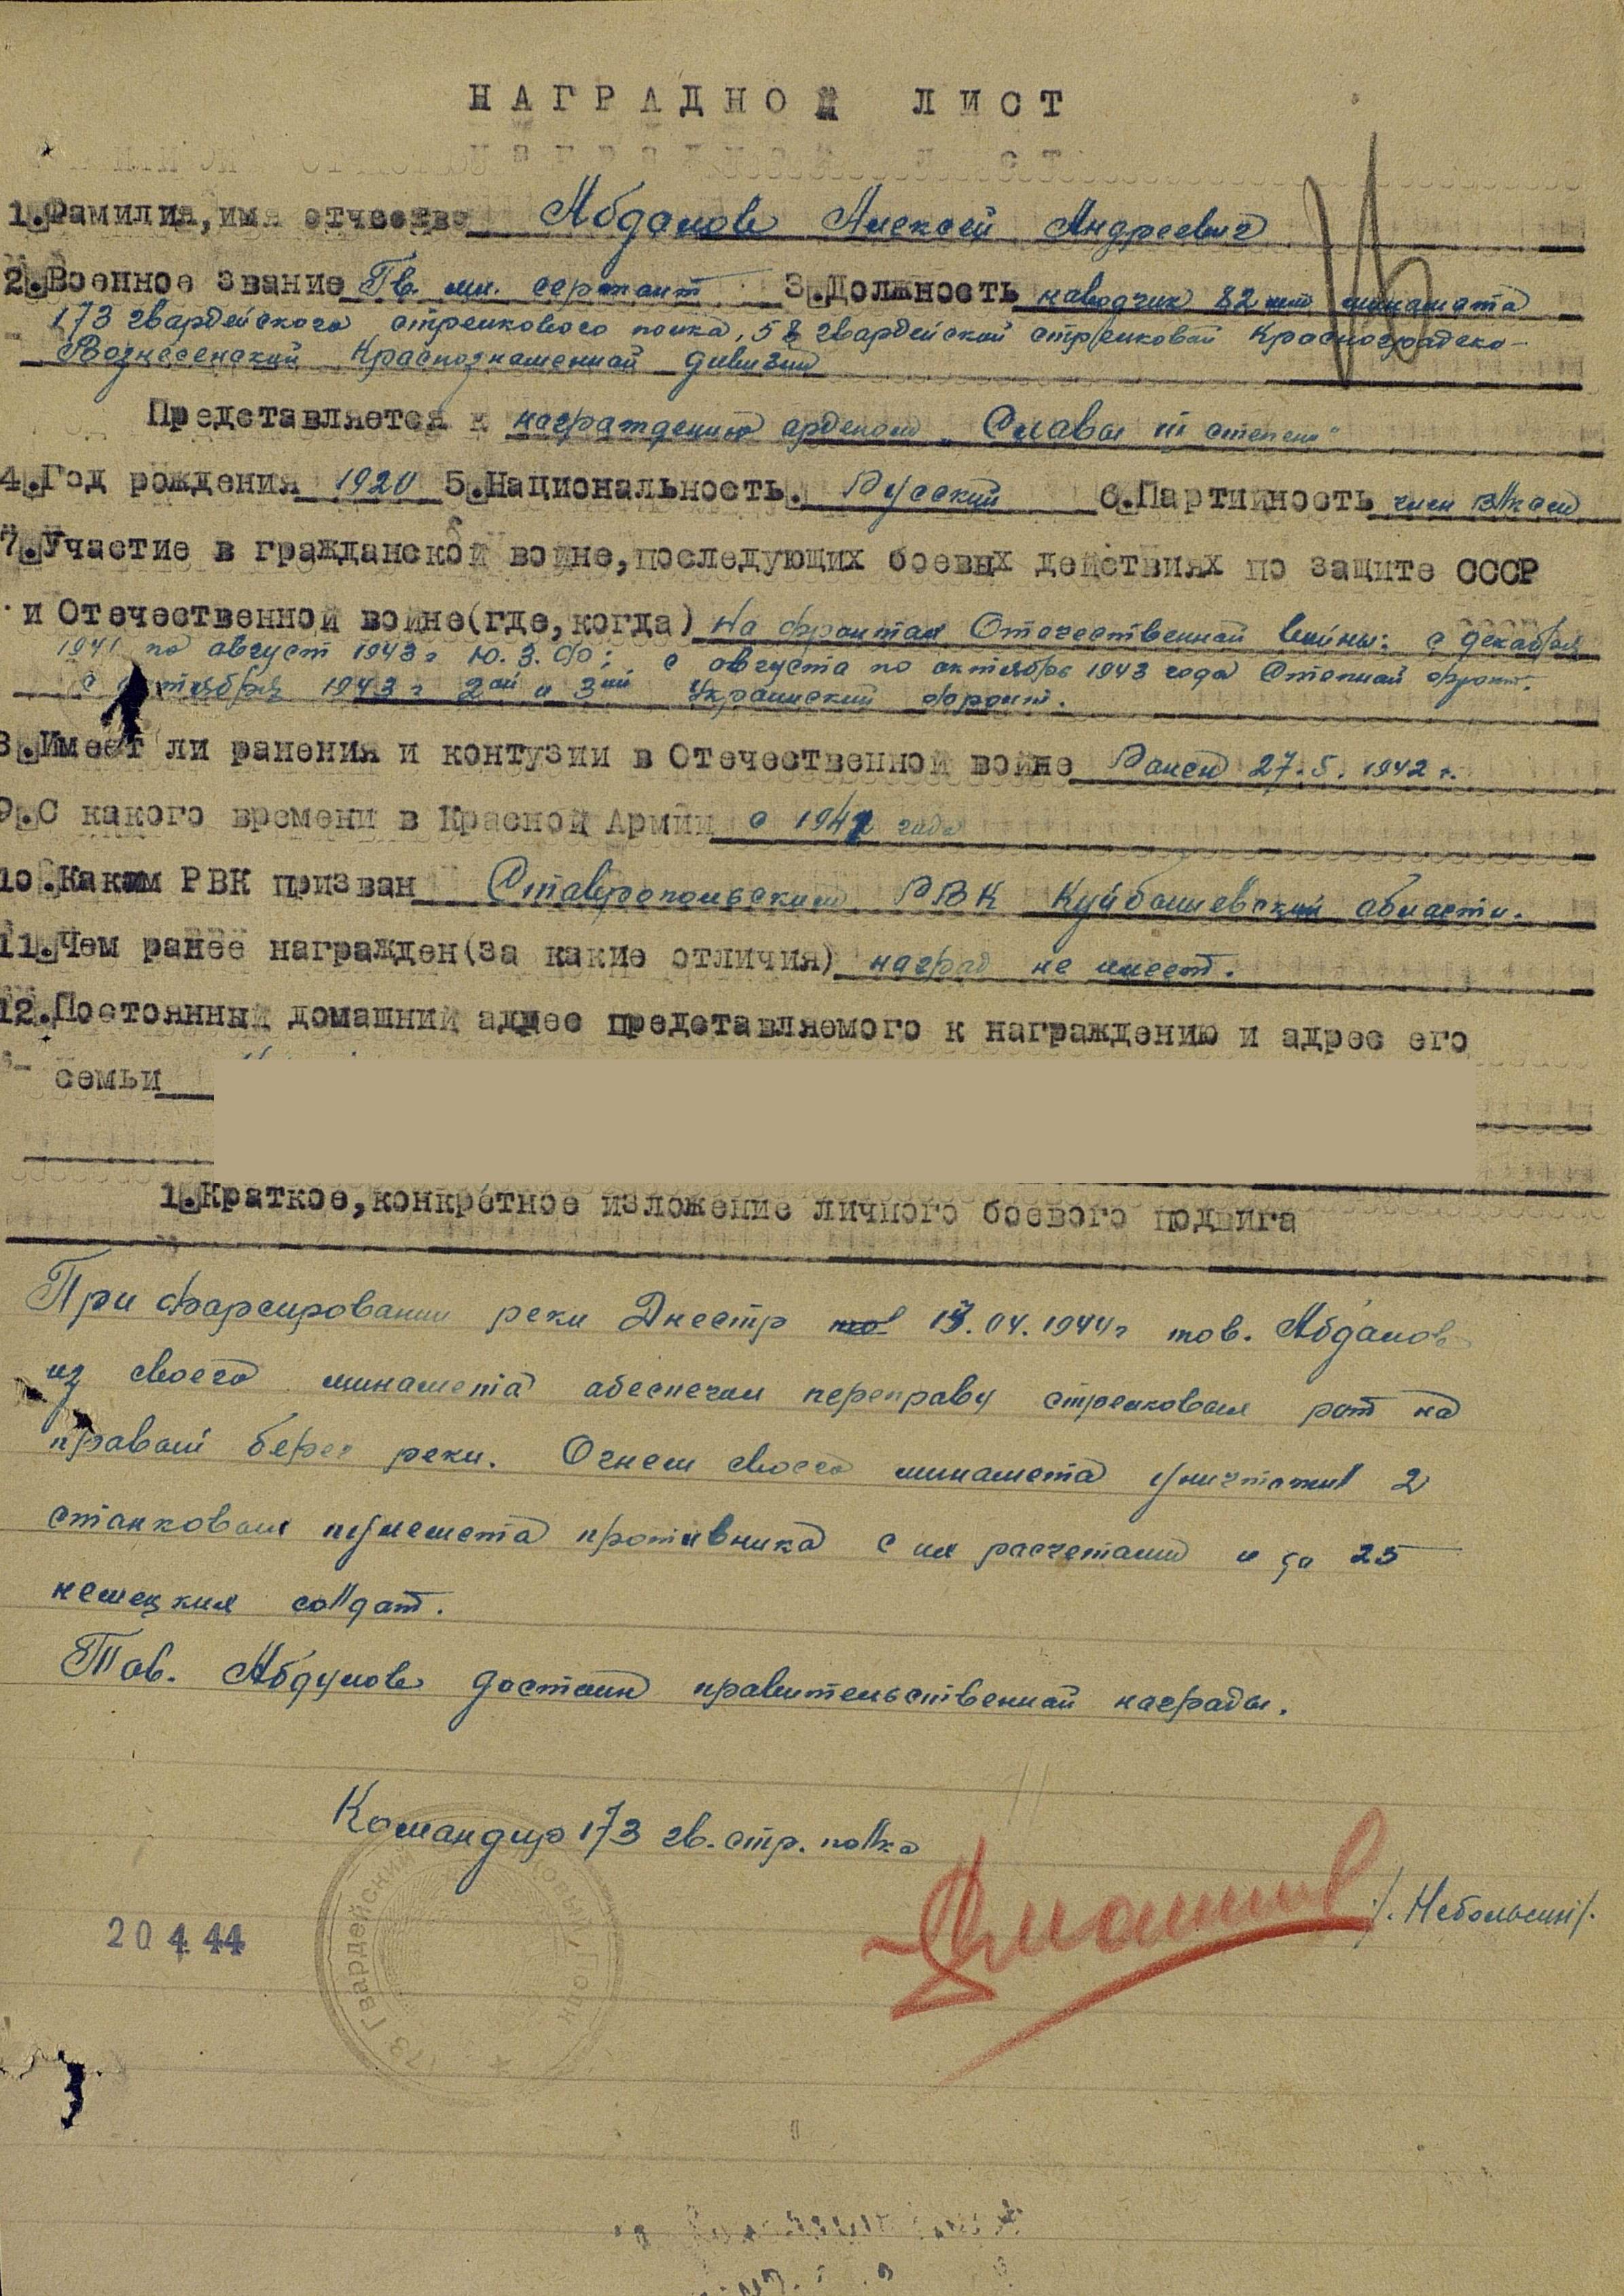 1.	Абдалов А.А. Наградной лист, 20.04.1944 г., орден Славы III степени